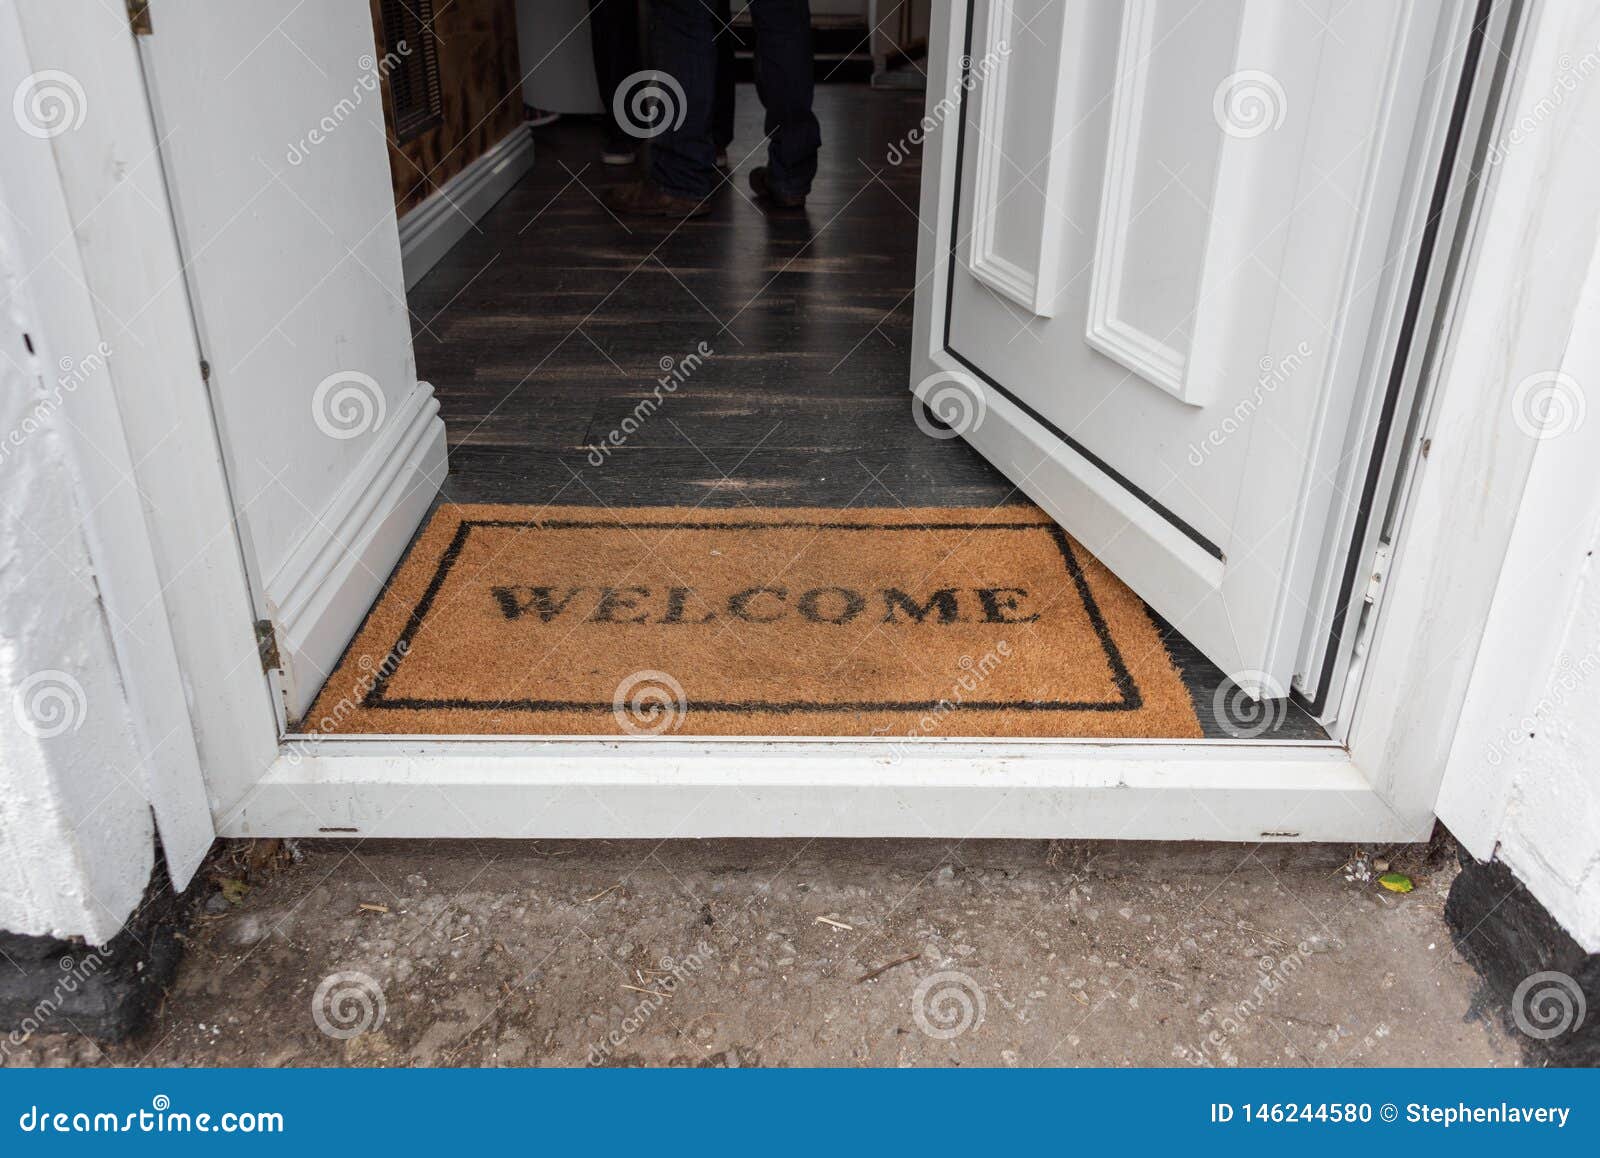 Hello open. Open the Door Welcome. Open Door mat. Мы у входа в дверь. Open your Doors with English.